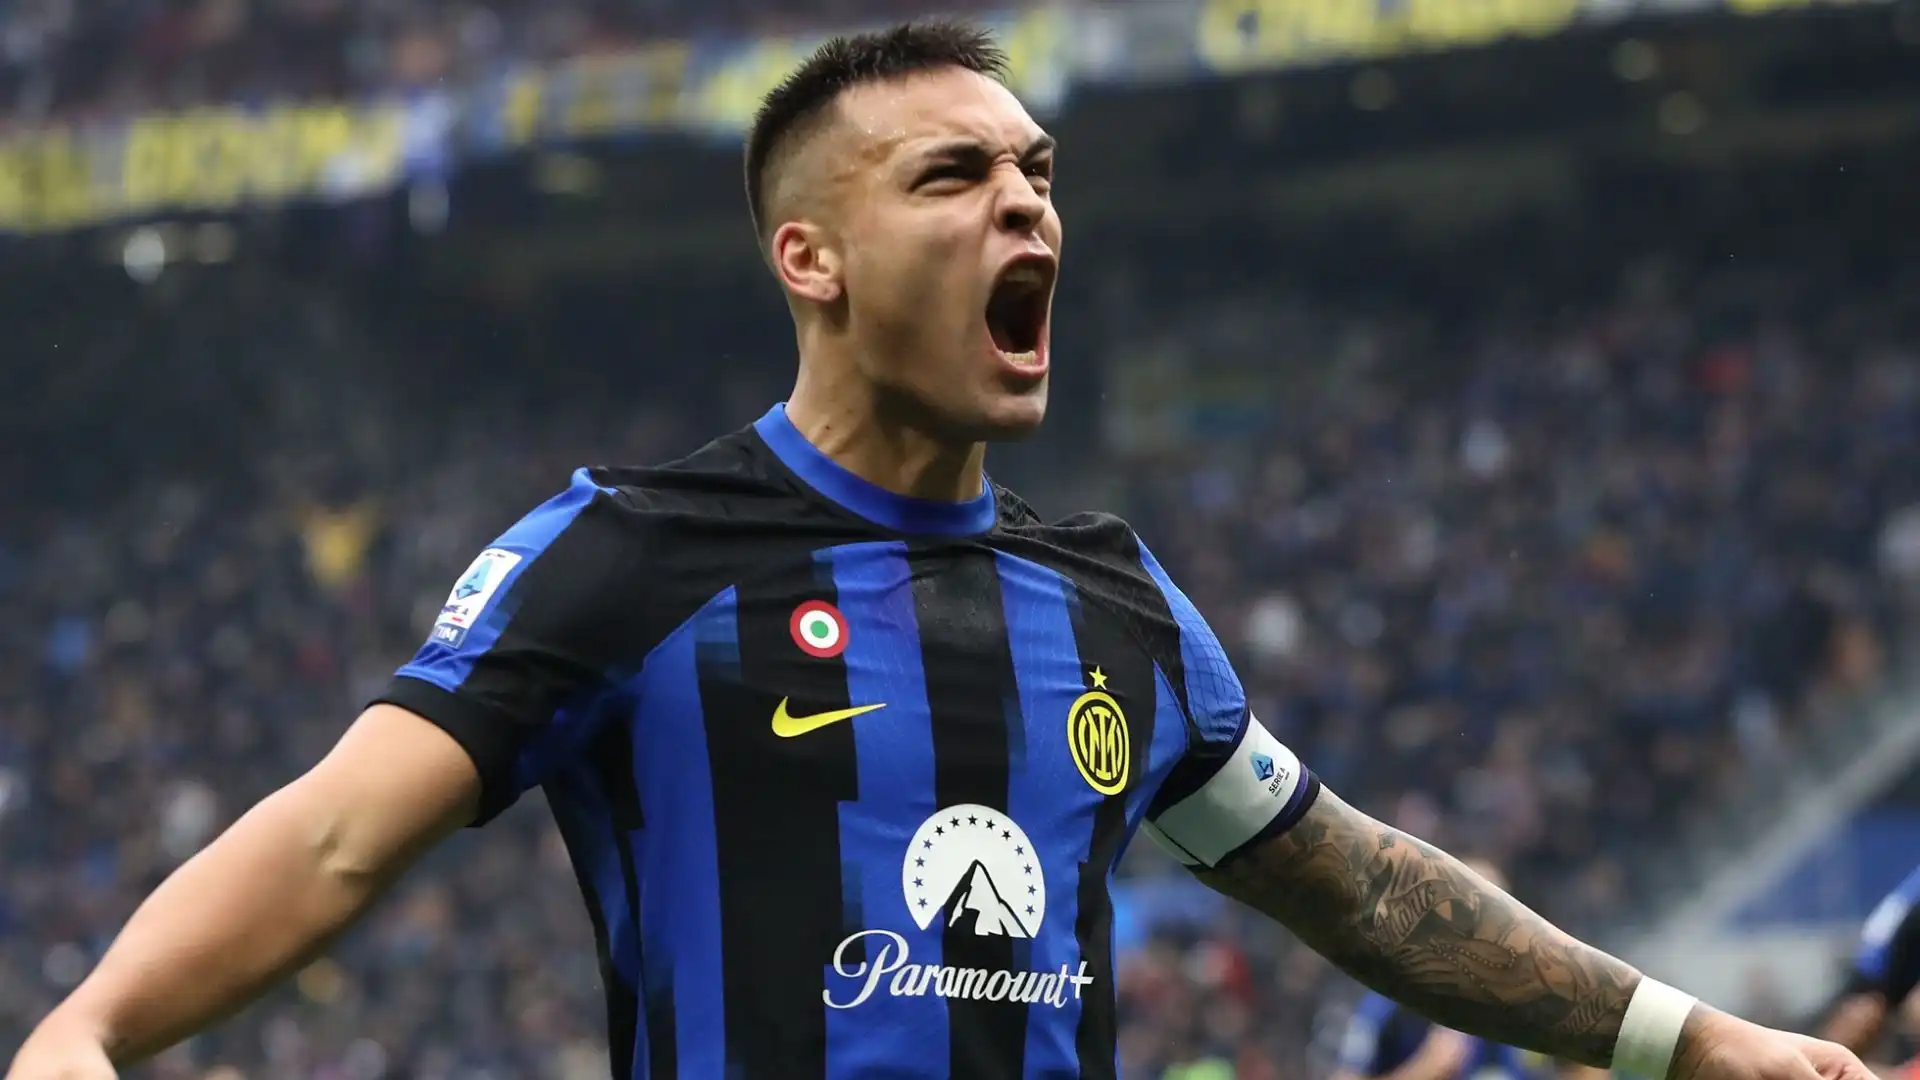 5- L'Inter ha incassato 101 milioni e 289 mila euro